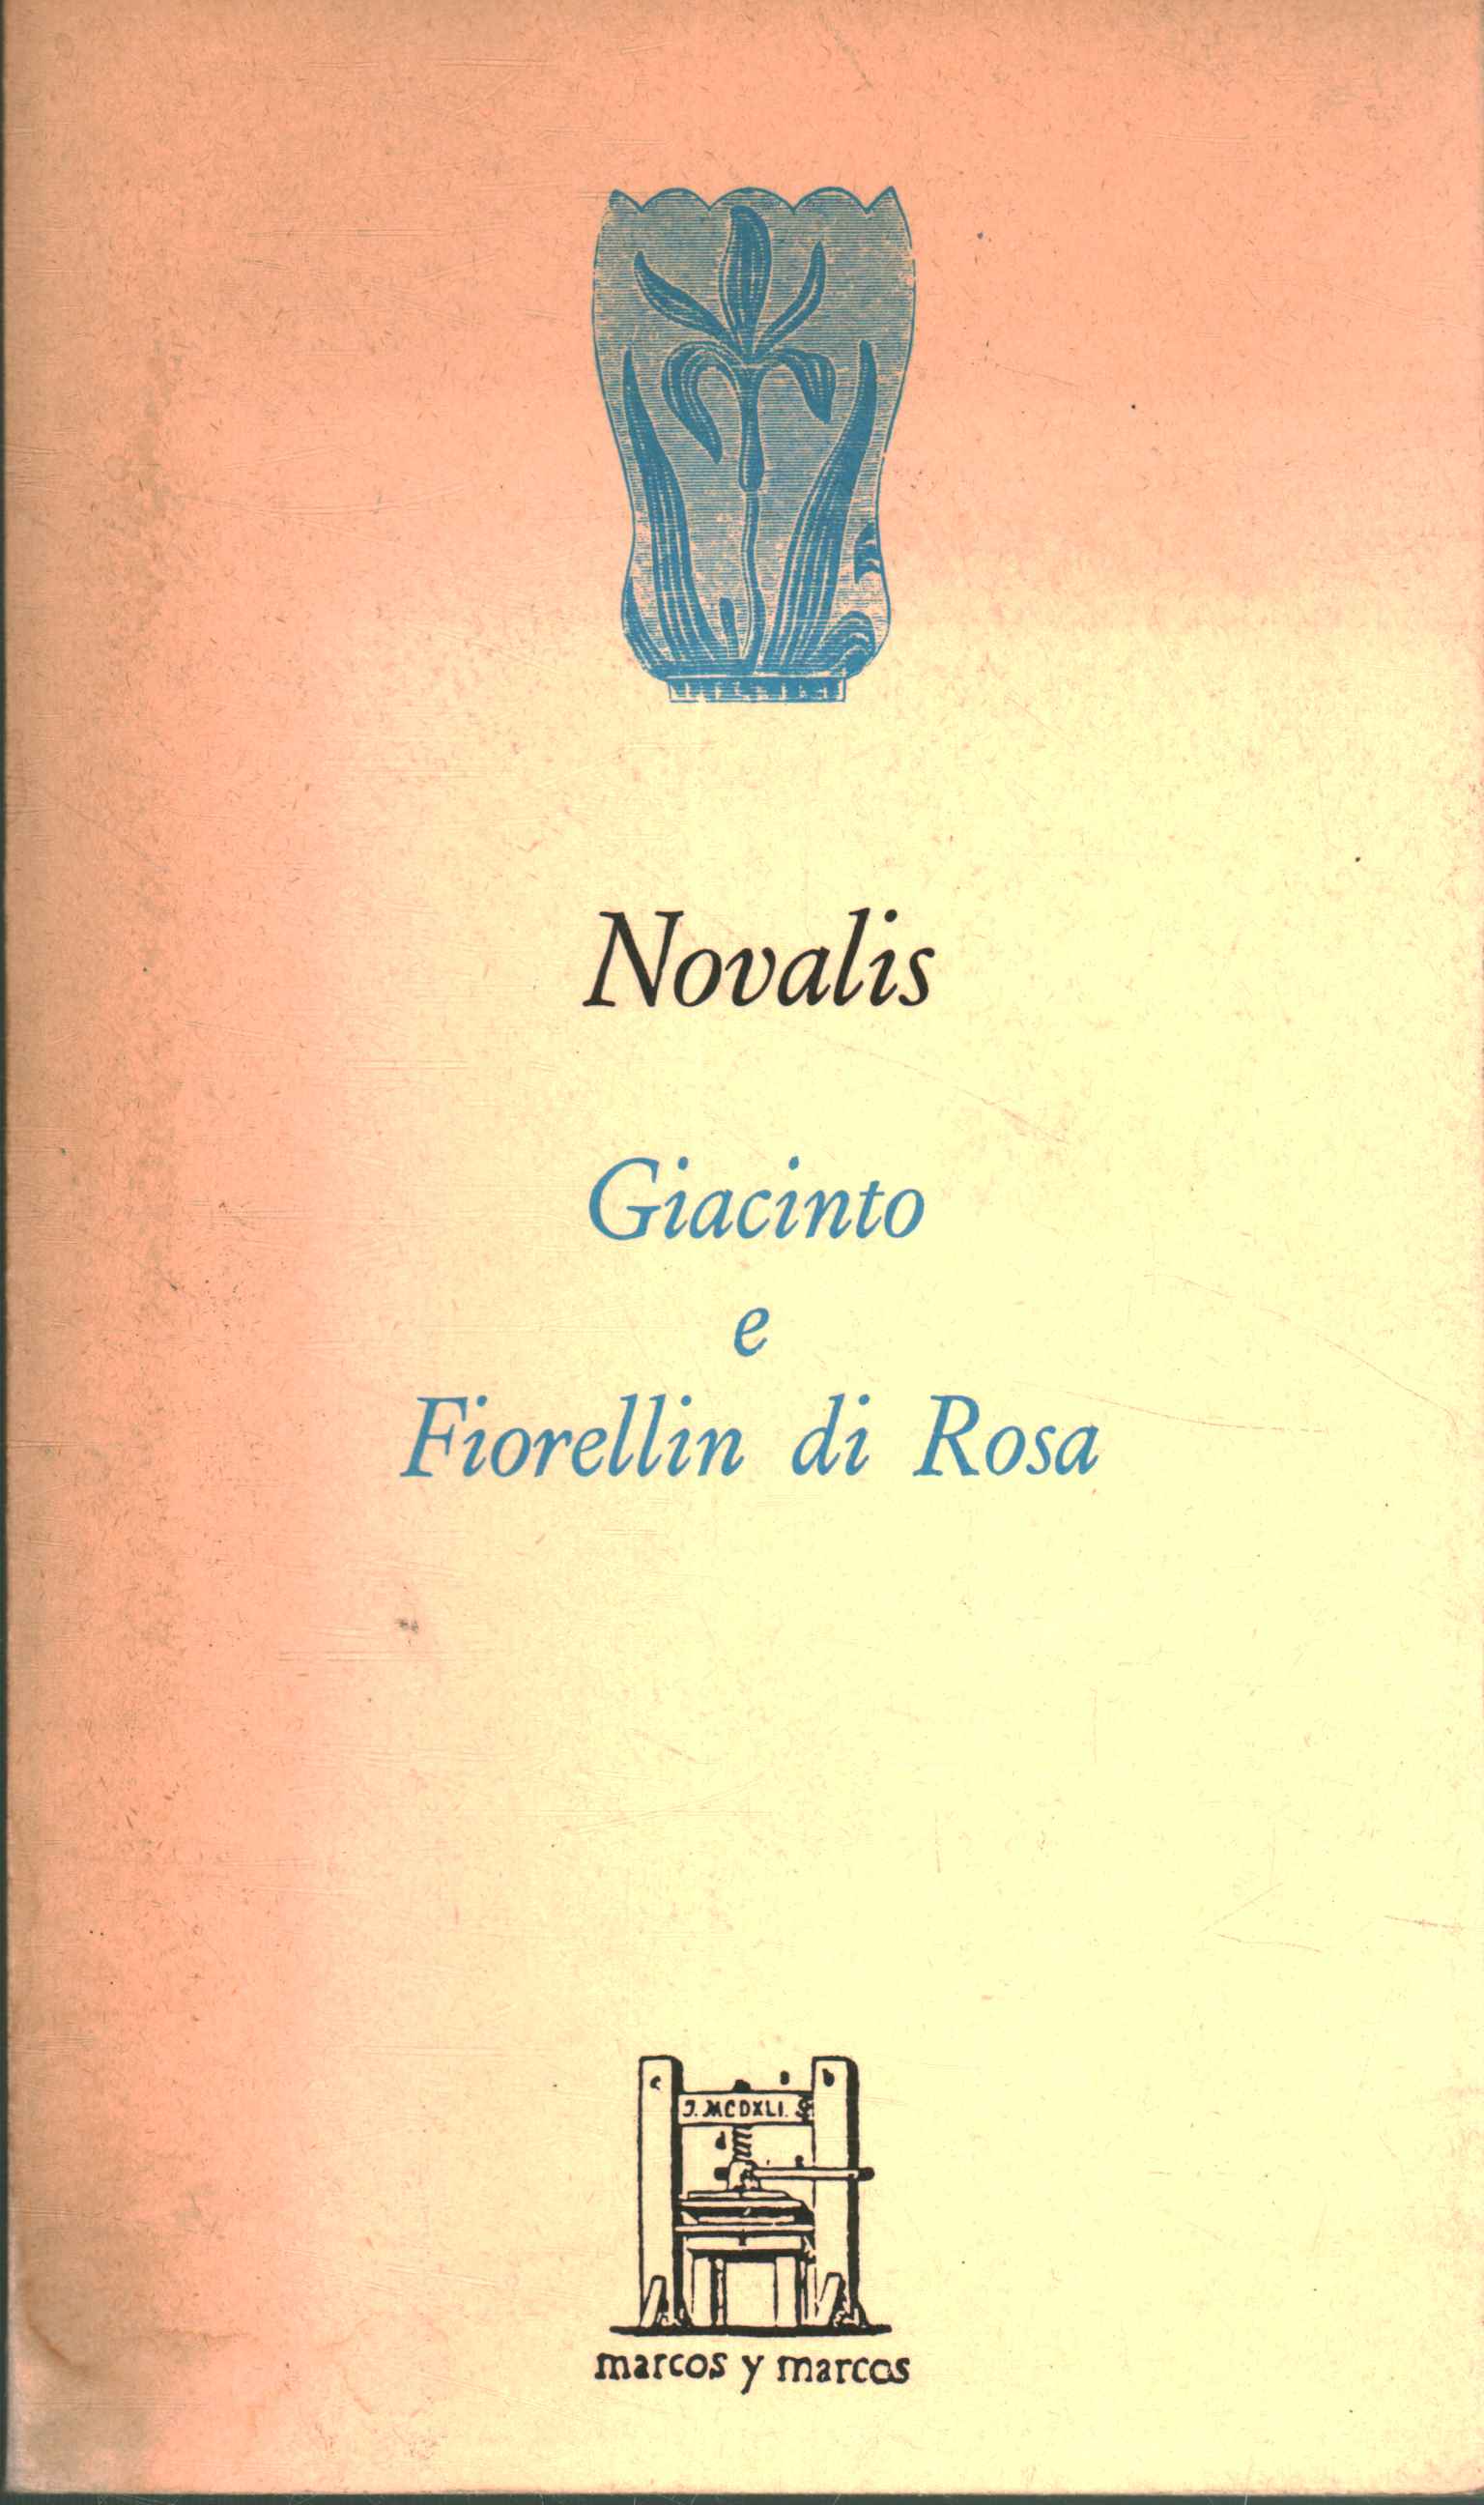 Giacinto and Fiorellin di Rosa